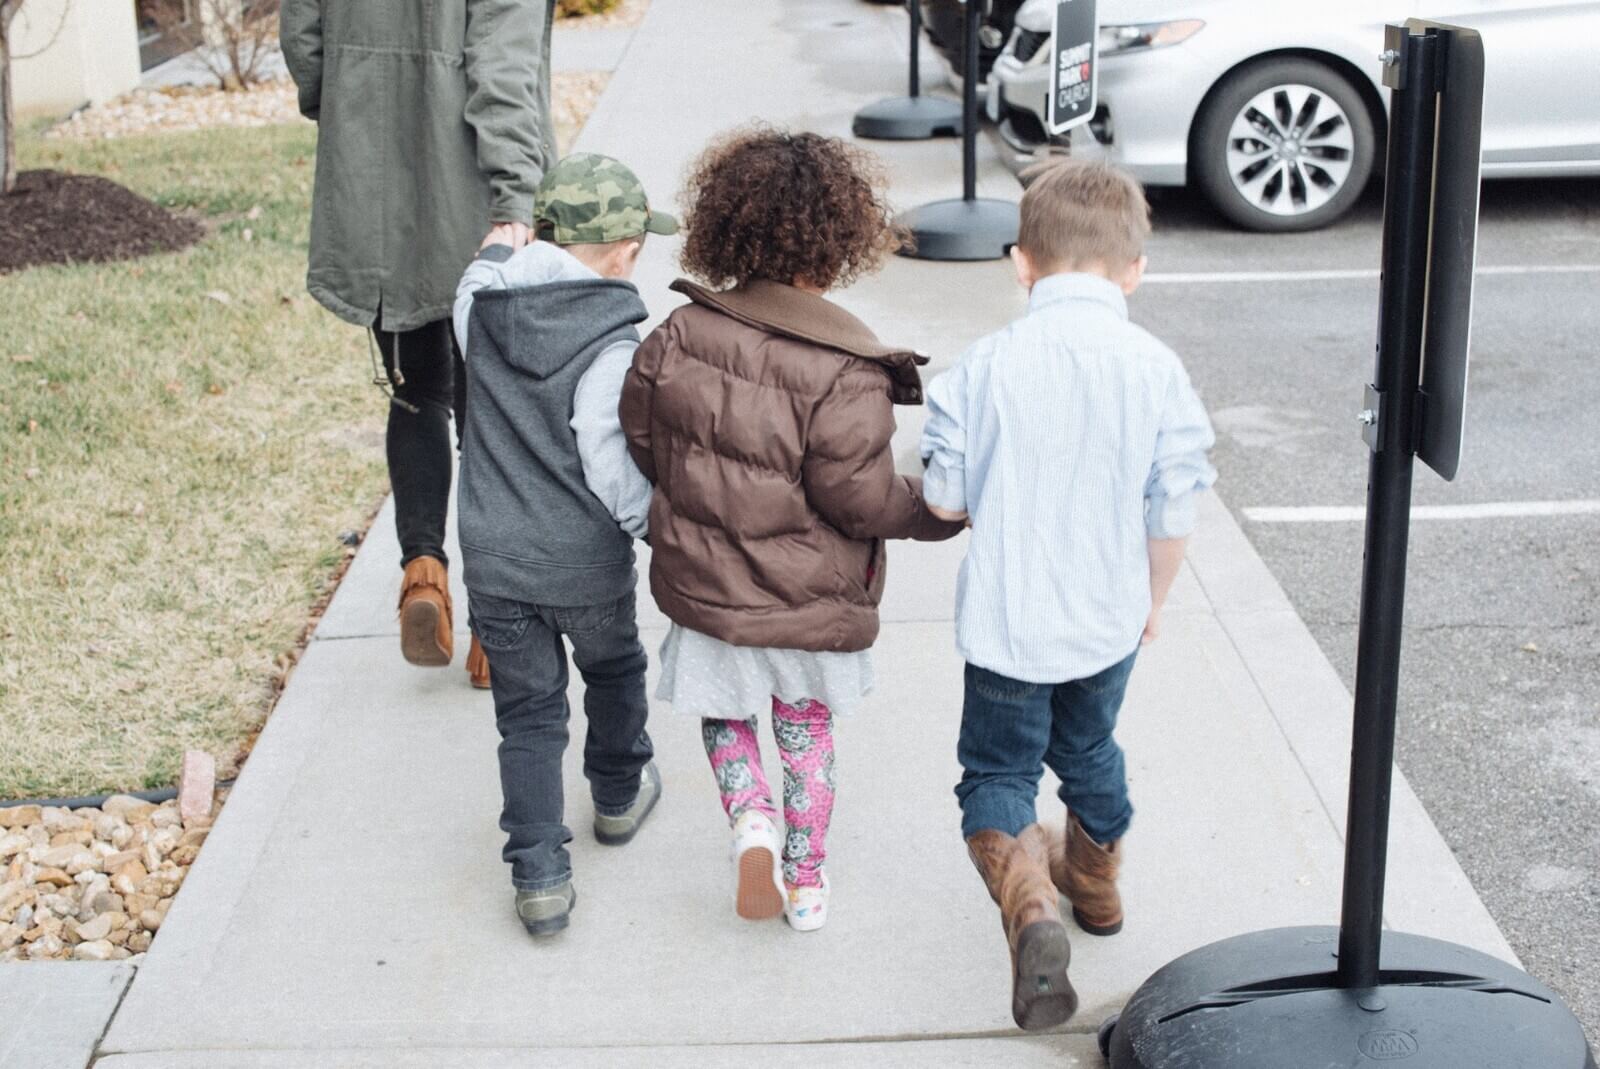 children of St. John's MCC walking on a sidewalk holding hands